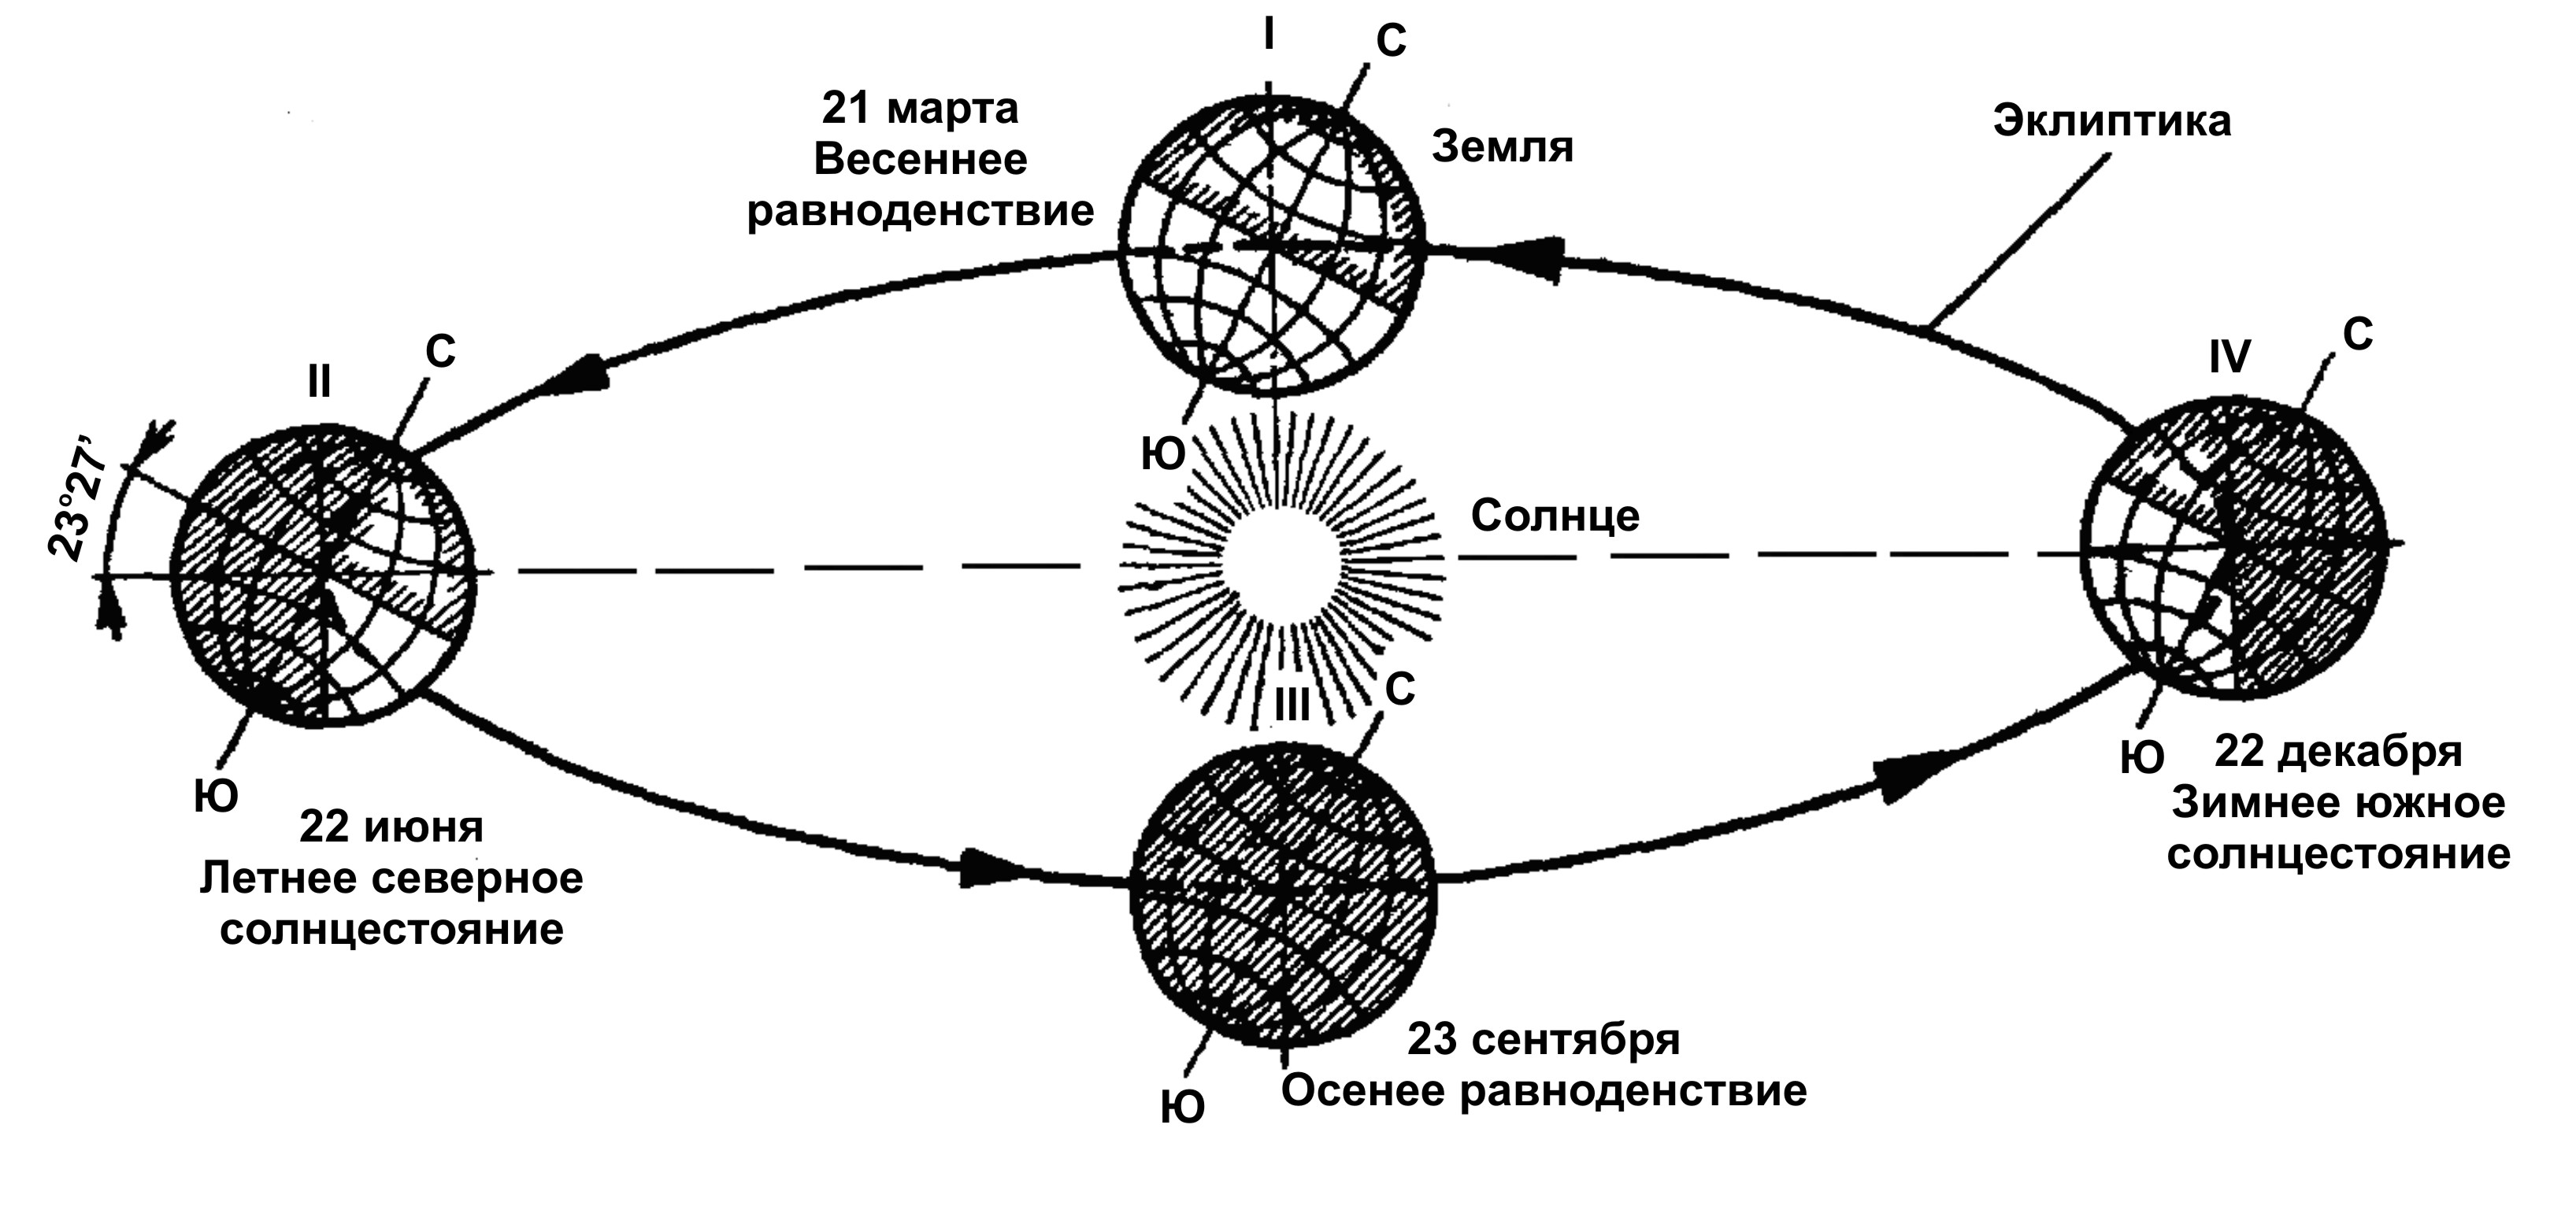 Передвижение по земле. Схема движения земли вокруг солнца. Схема оборота земли вокруг солнца. Схема орбиты земли вокруг солнца. Схема годового вращения земли вокруг солнца.